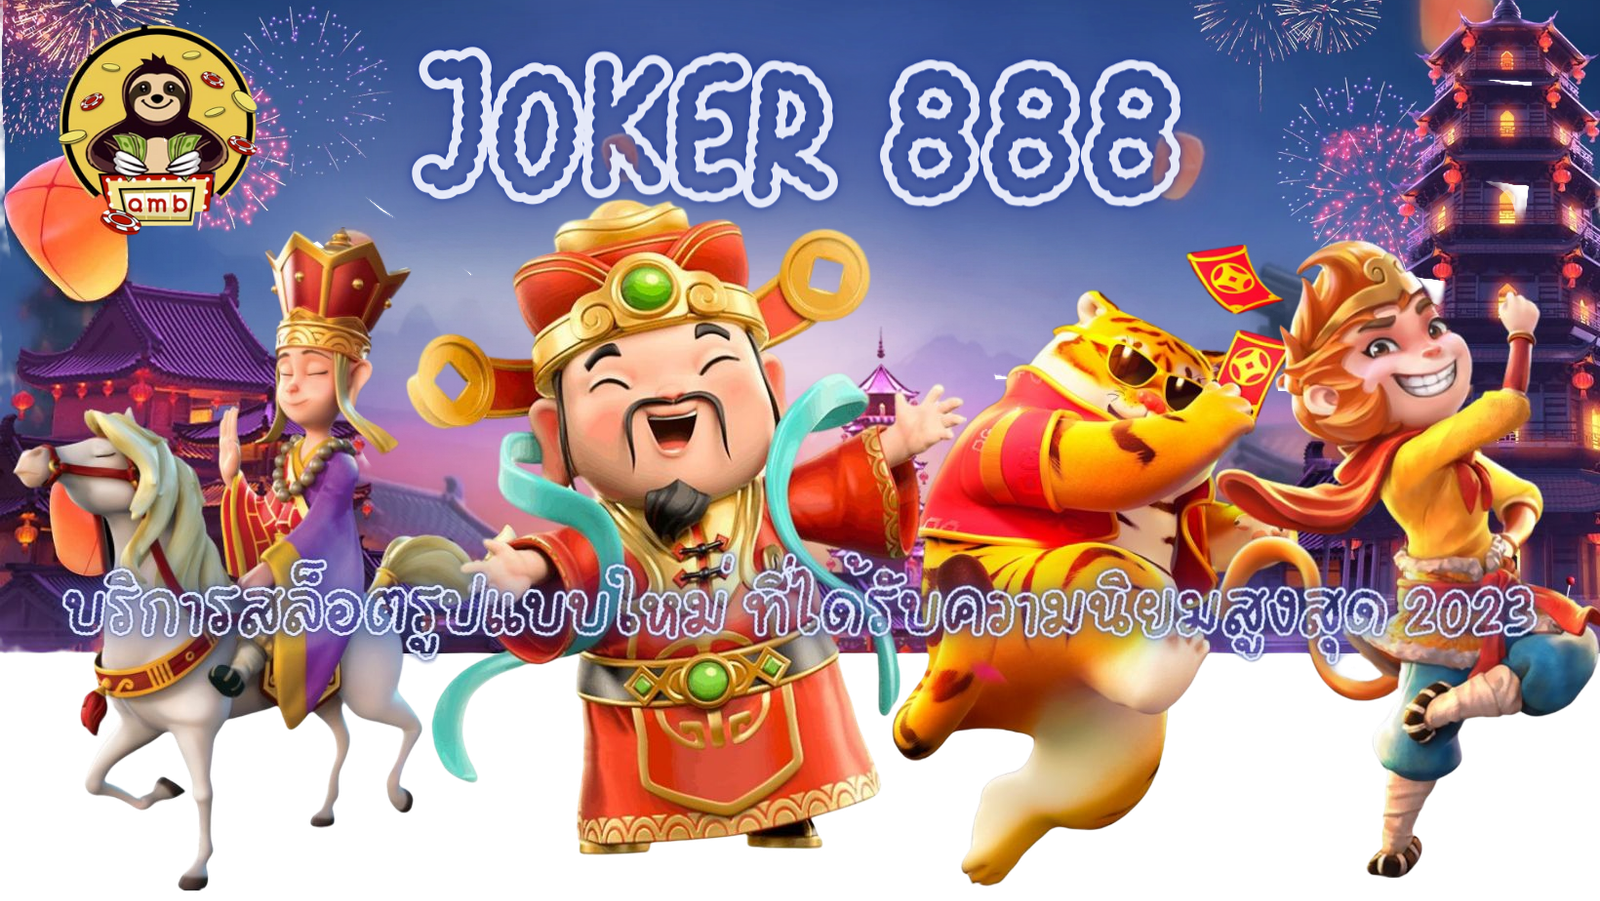 Joker-888-ได้รับความนิยมสูงสุด